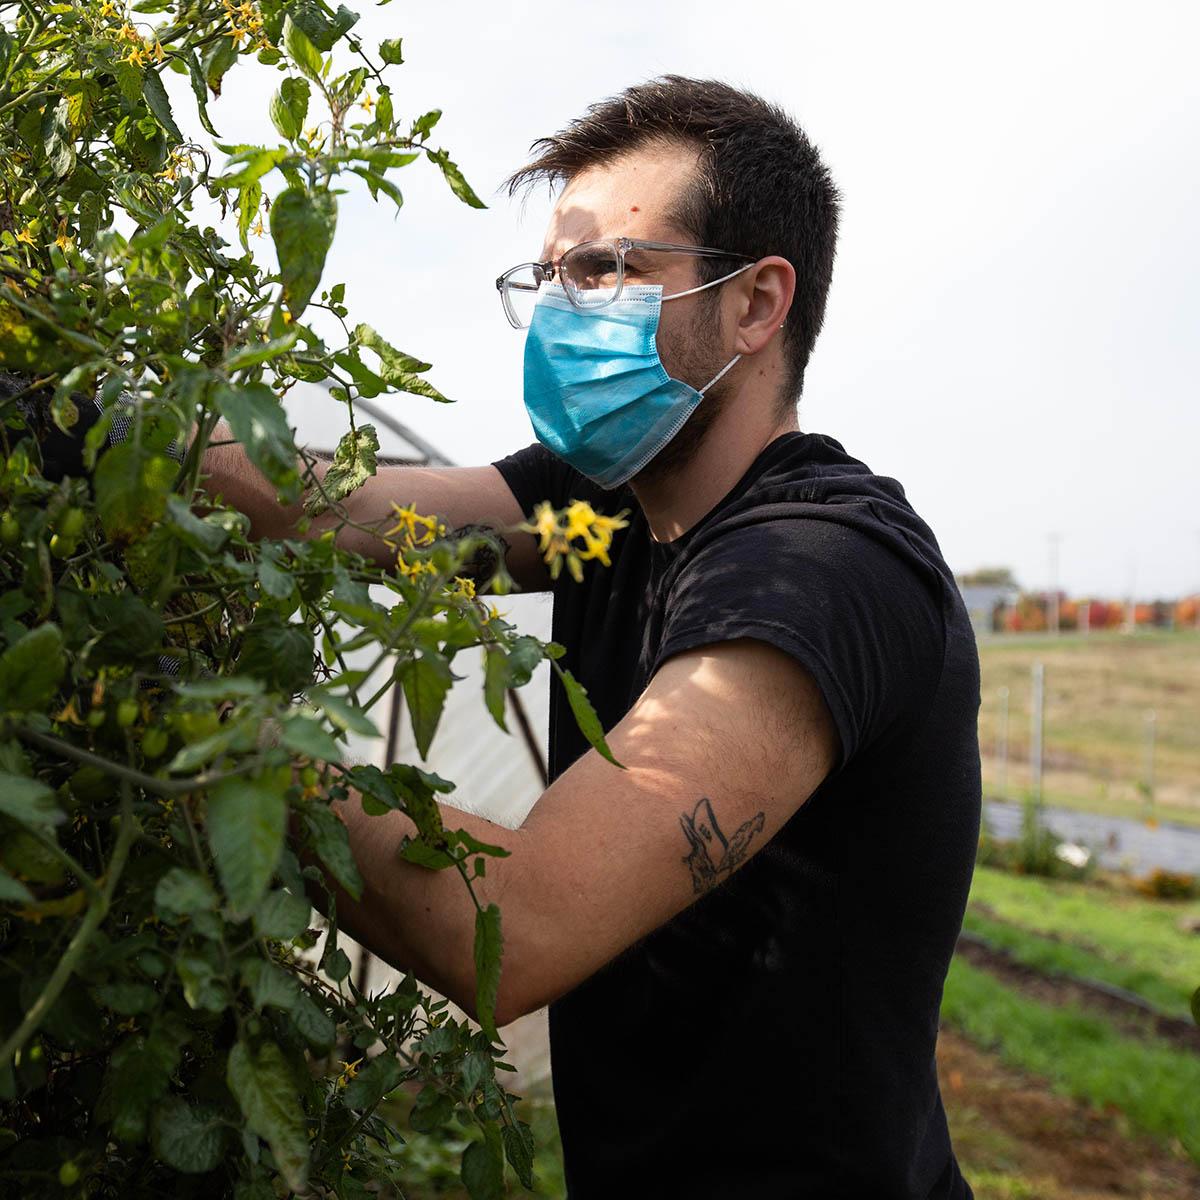 图为一名男学生戴着眼镜和面具在生态农业园内工作